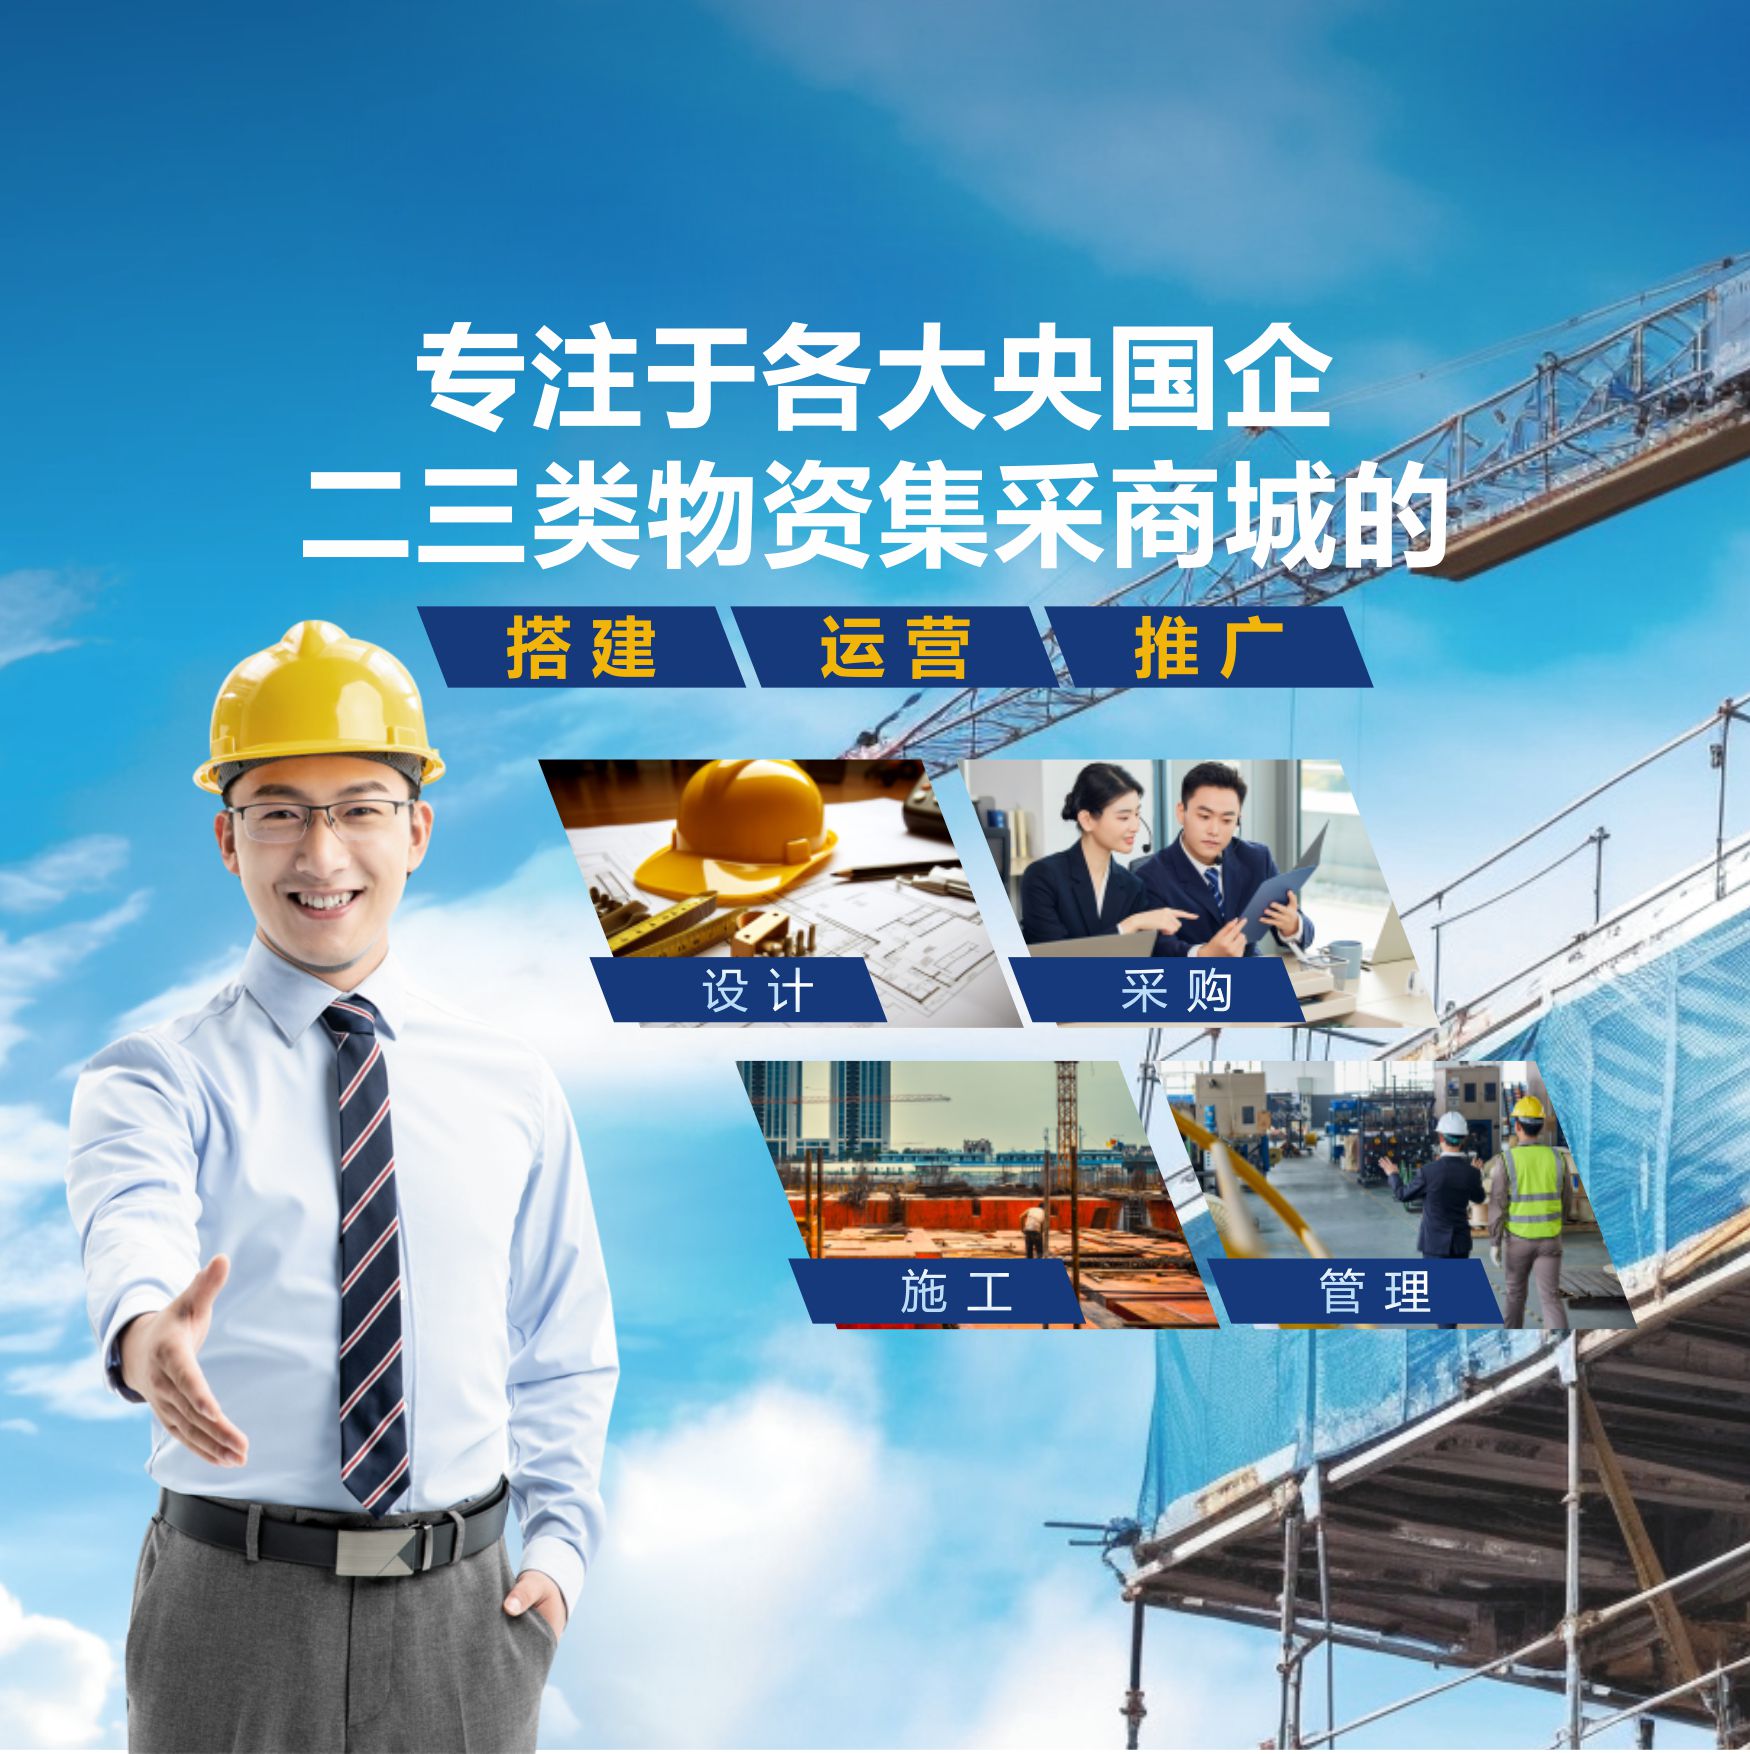 昆明新腾-为epc工程总包提供一站式服务